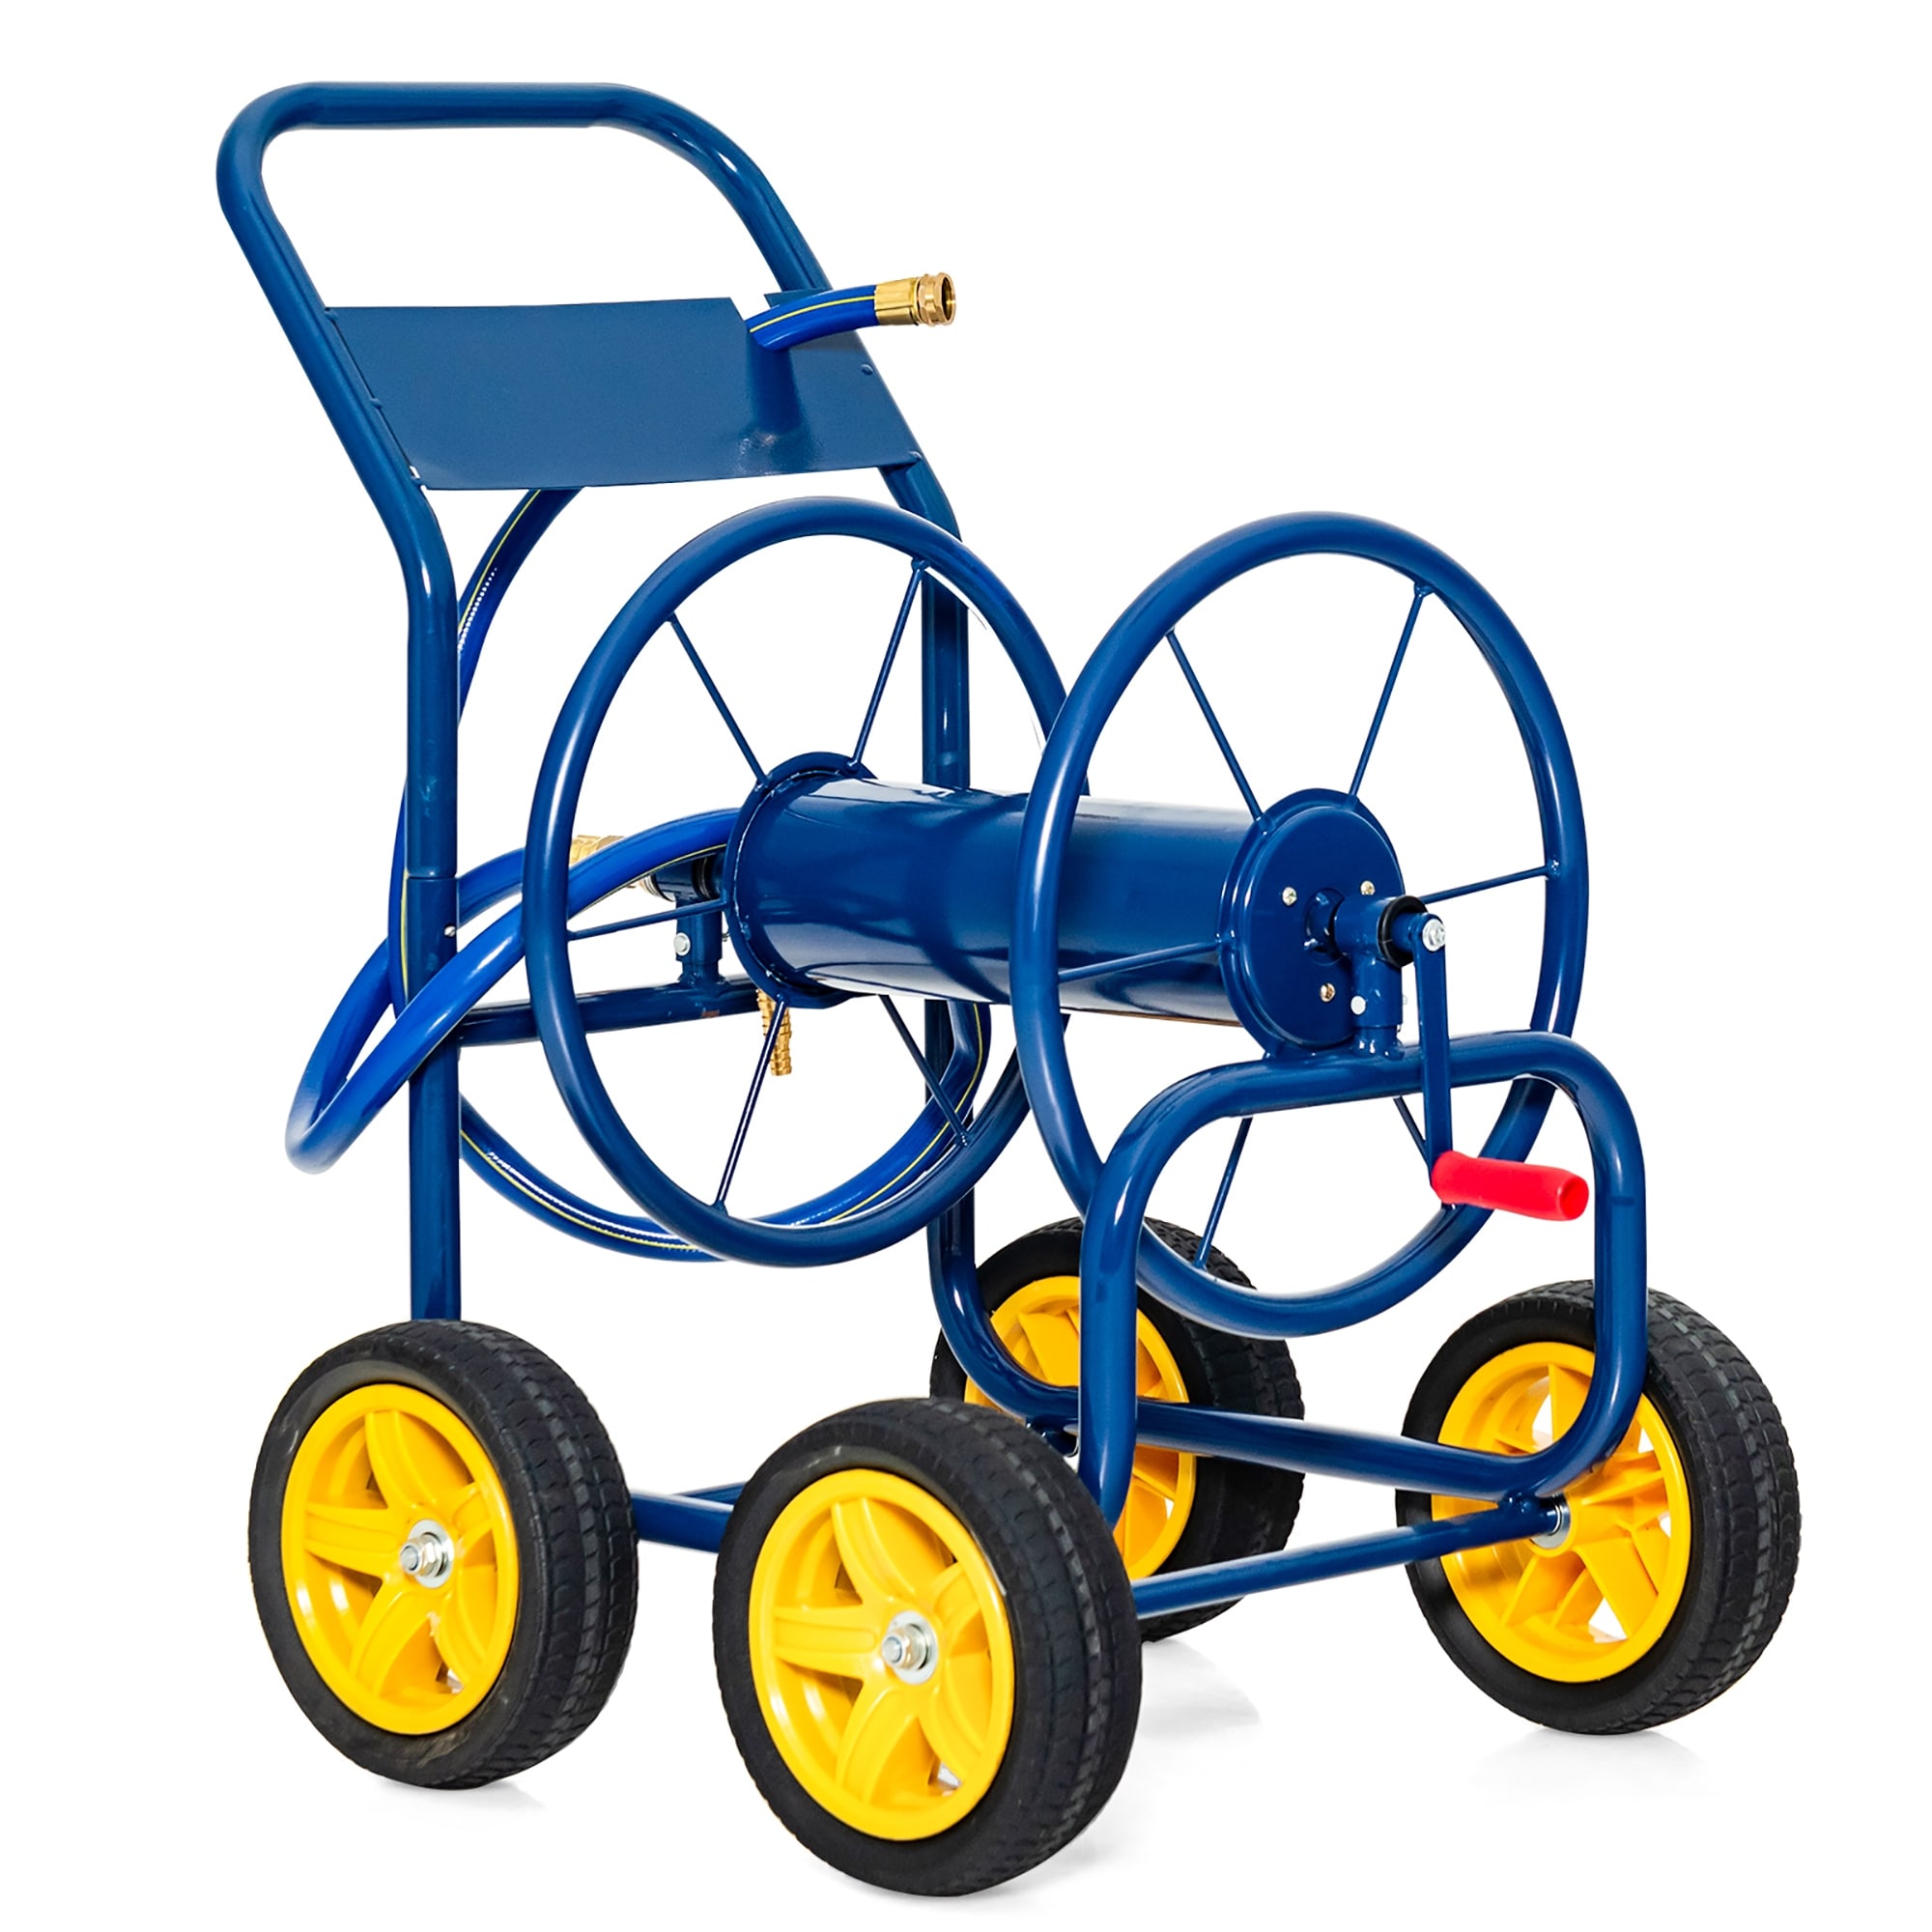 Costway Garden Hose Reel Cart Holds 330ft of 3/4or 5/8 Hose 400ft of - See Details - Blue